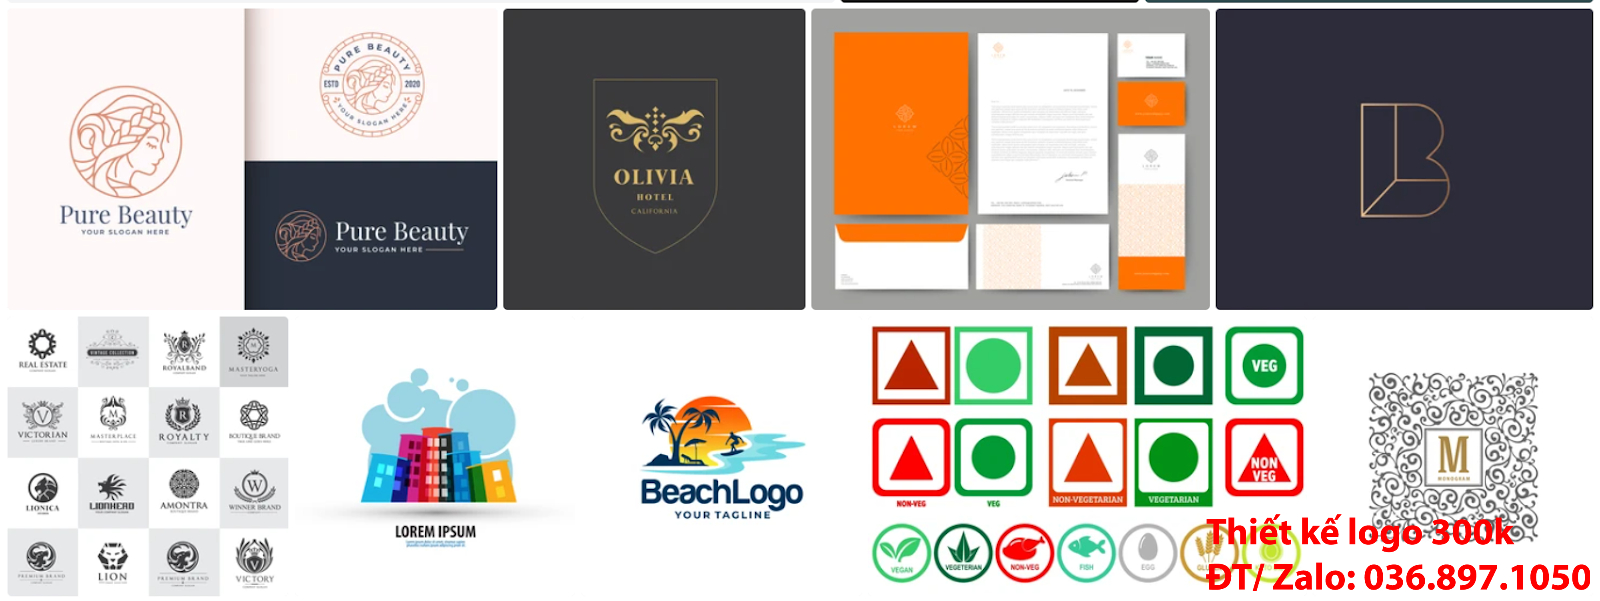 Mẫu logo đẹp khách sạn resort nhà nghỉ sáng tạo chuyên nghiệp online giá rẻ 300k